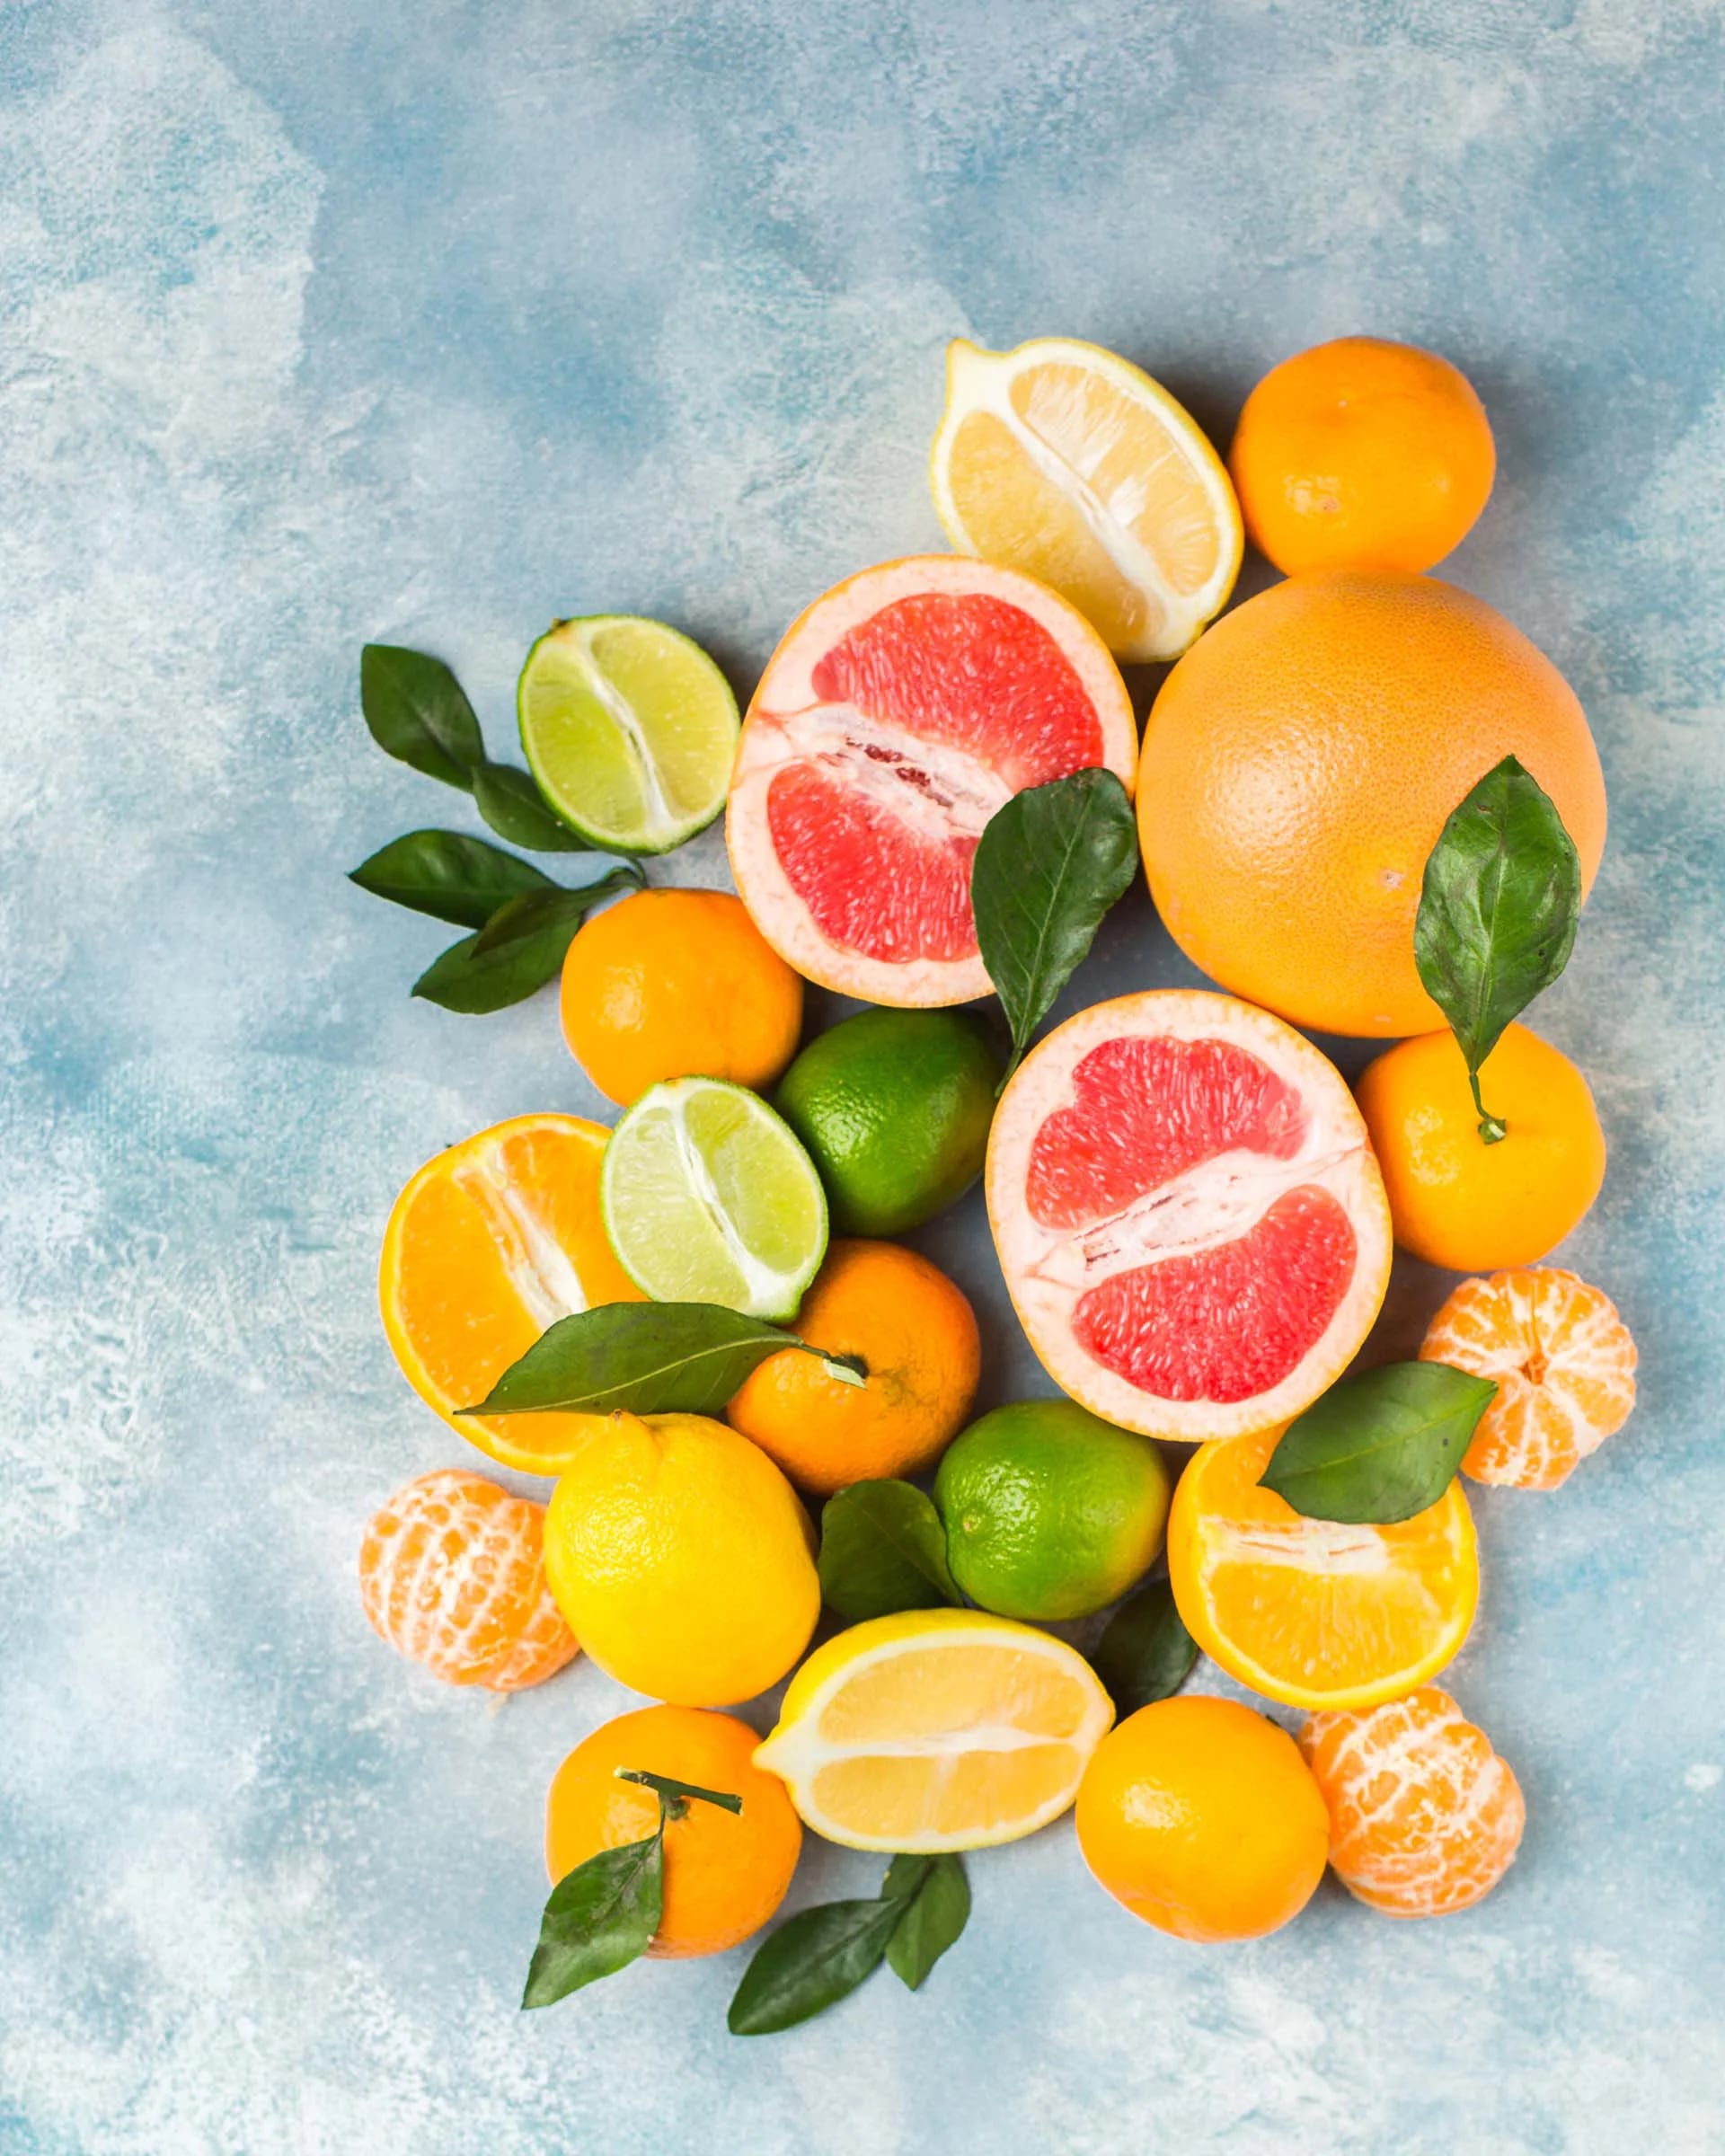 Los citricos aportan vitamina C e hidratación al organismo lo que brinda diversos beneficios a la salud capilar